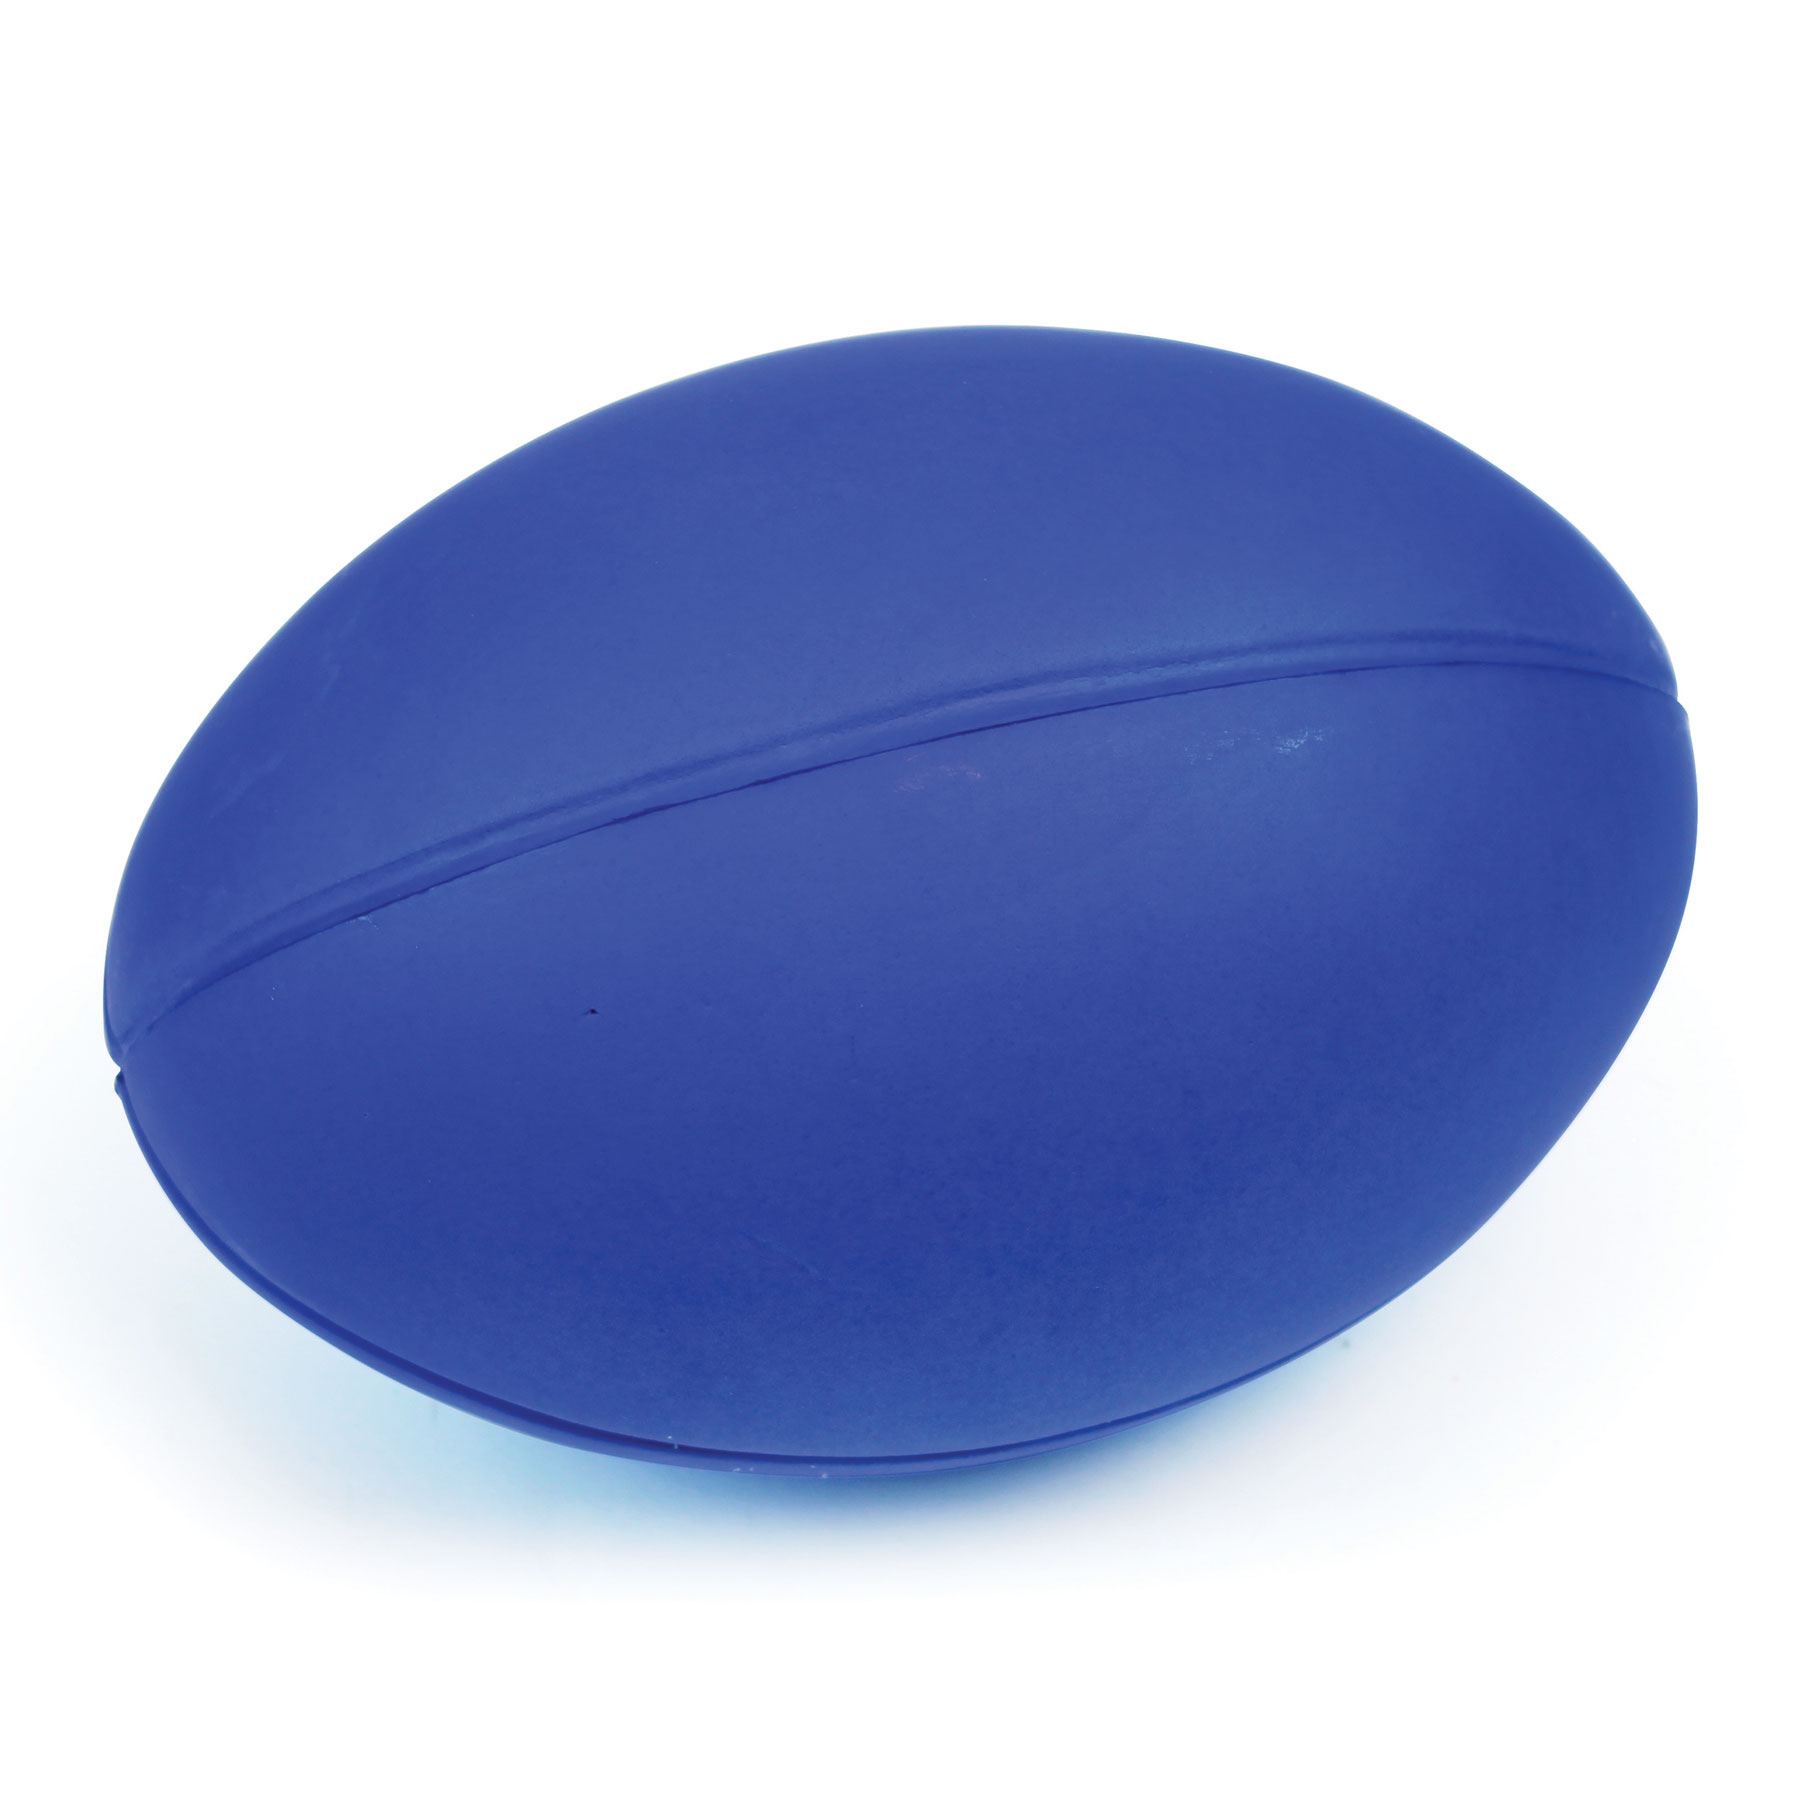 Skinned Foam Midi Rugby Ball